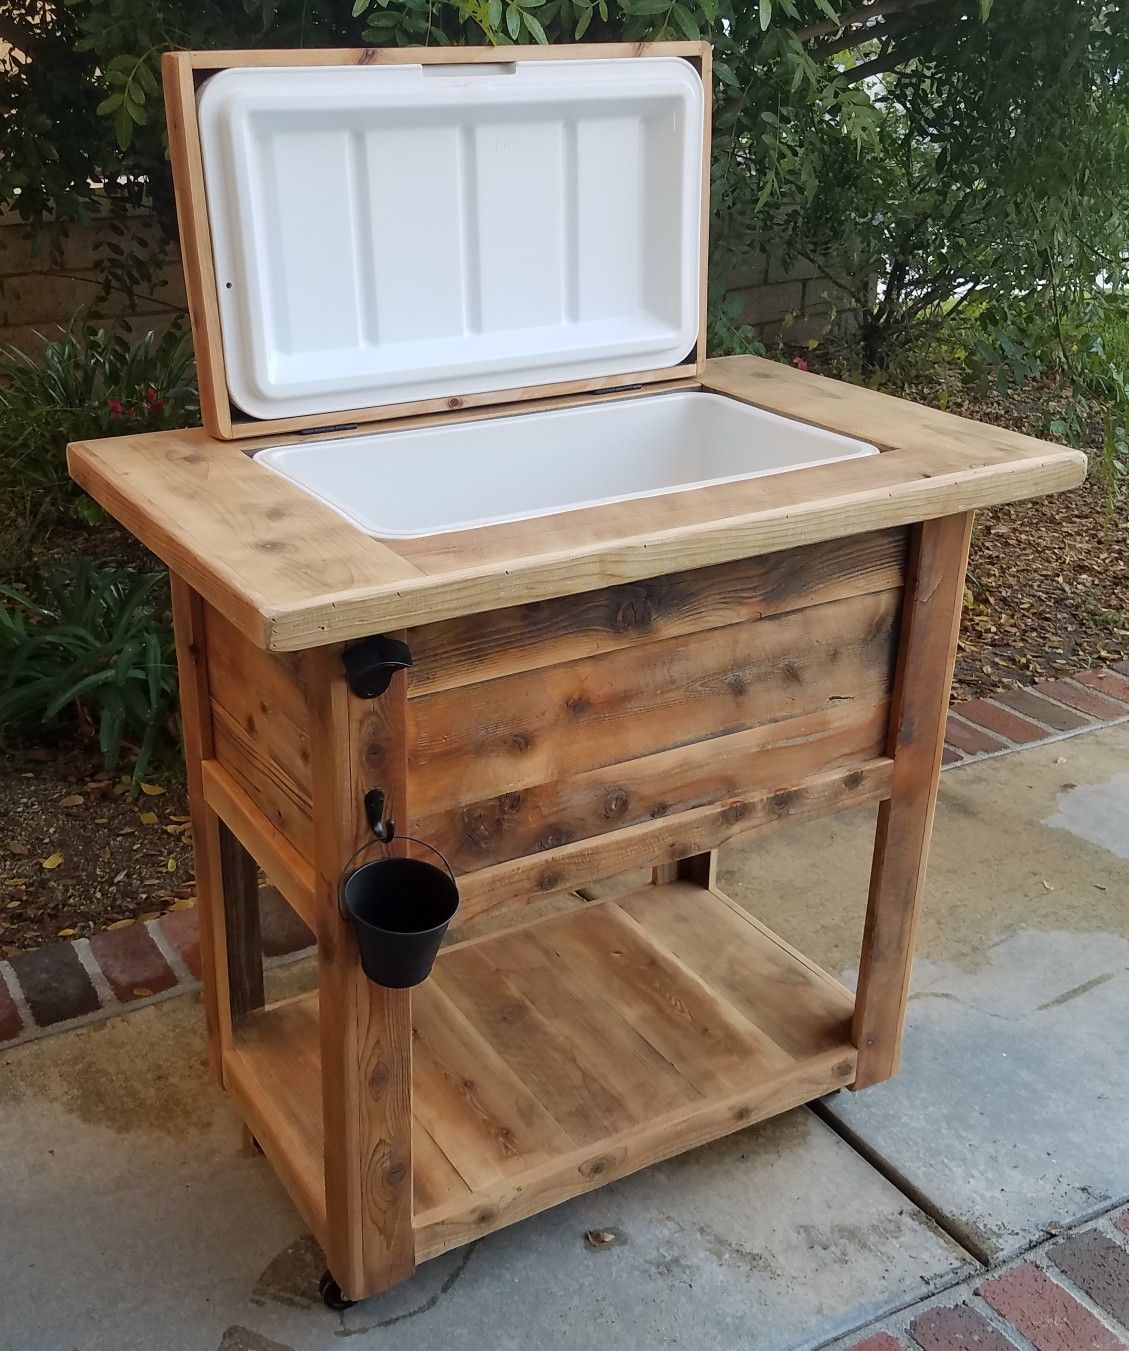 Rustic custom cooler/Ice chest